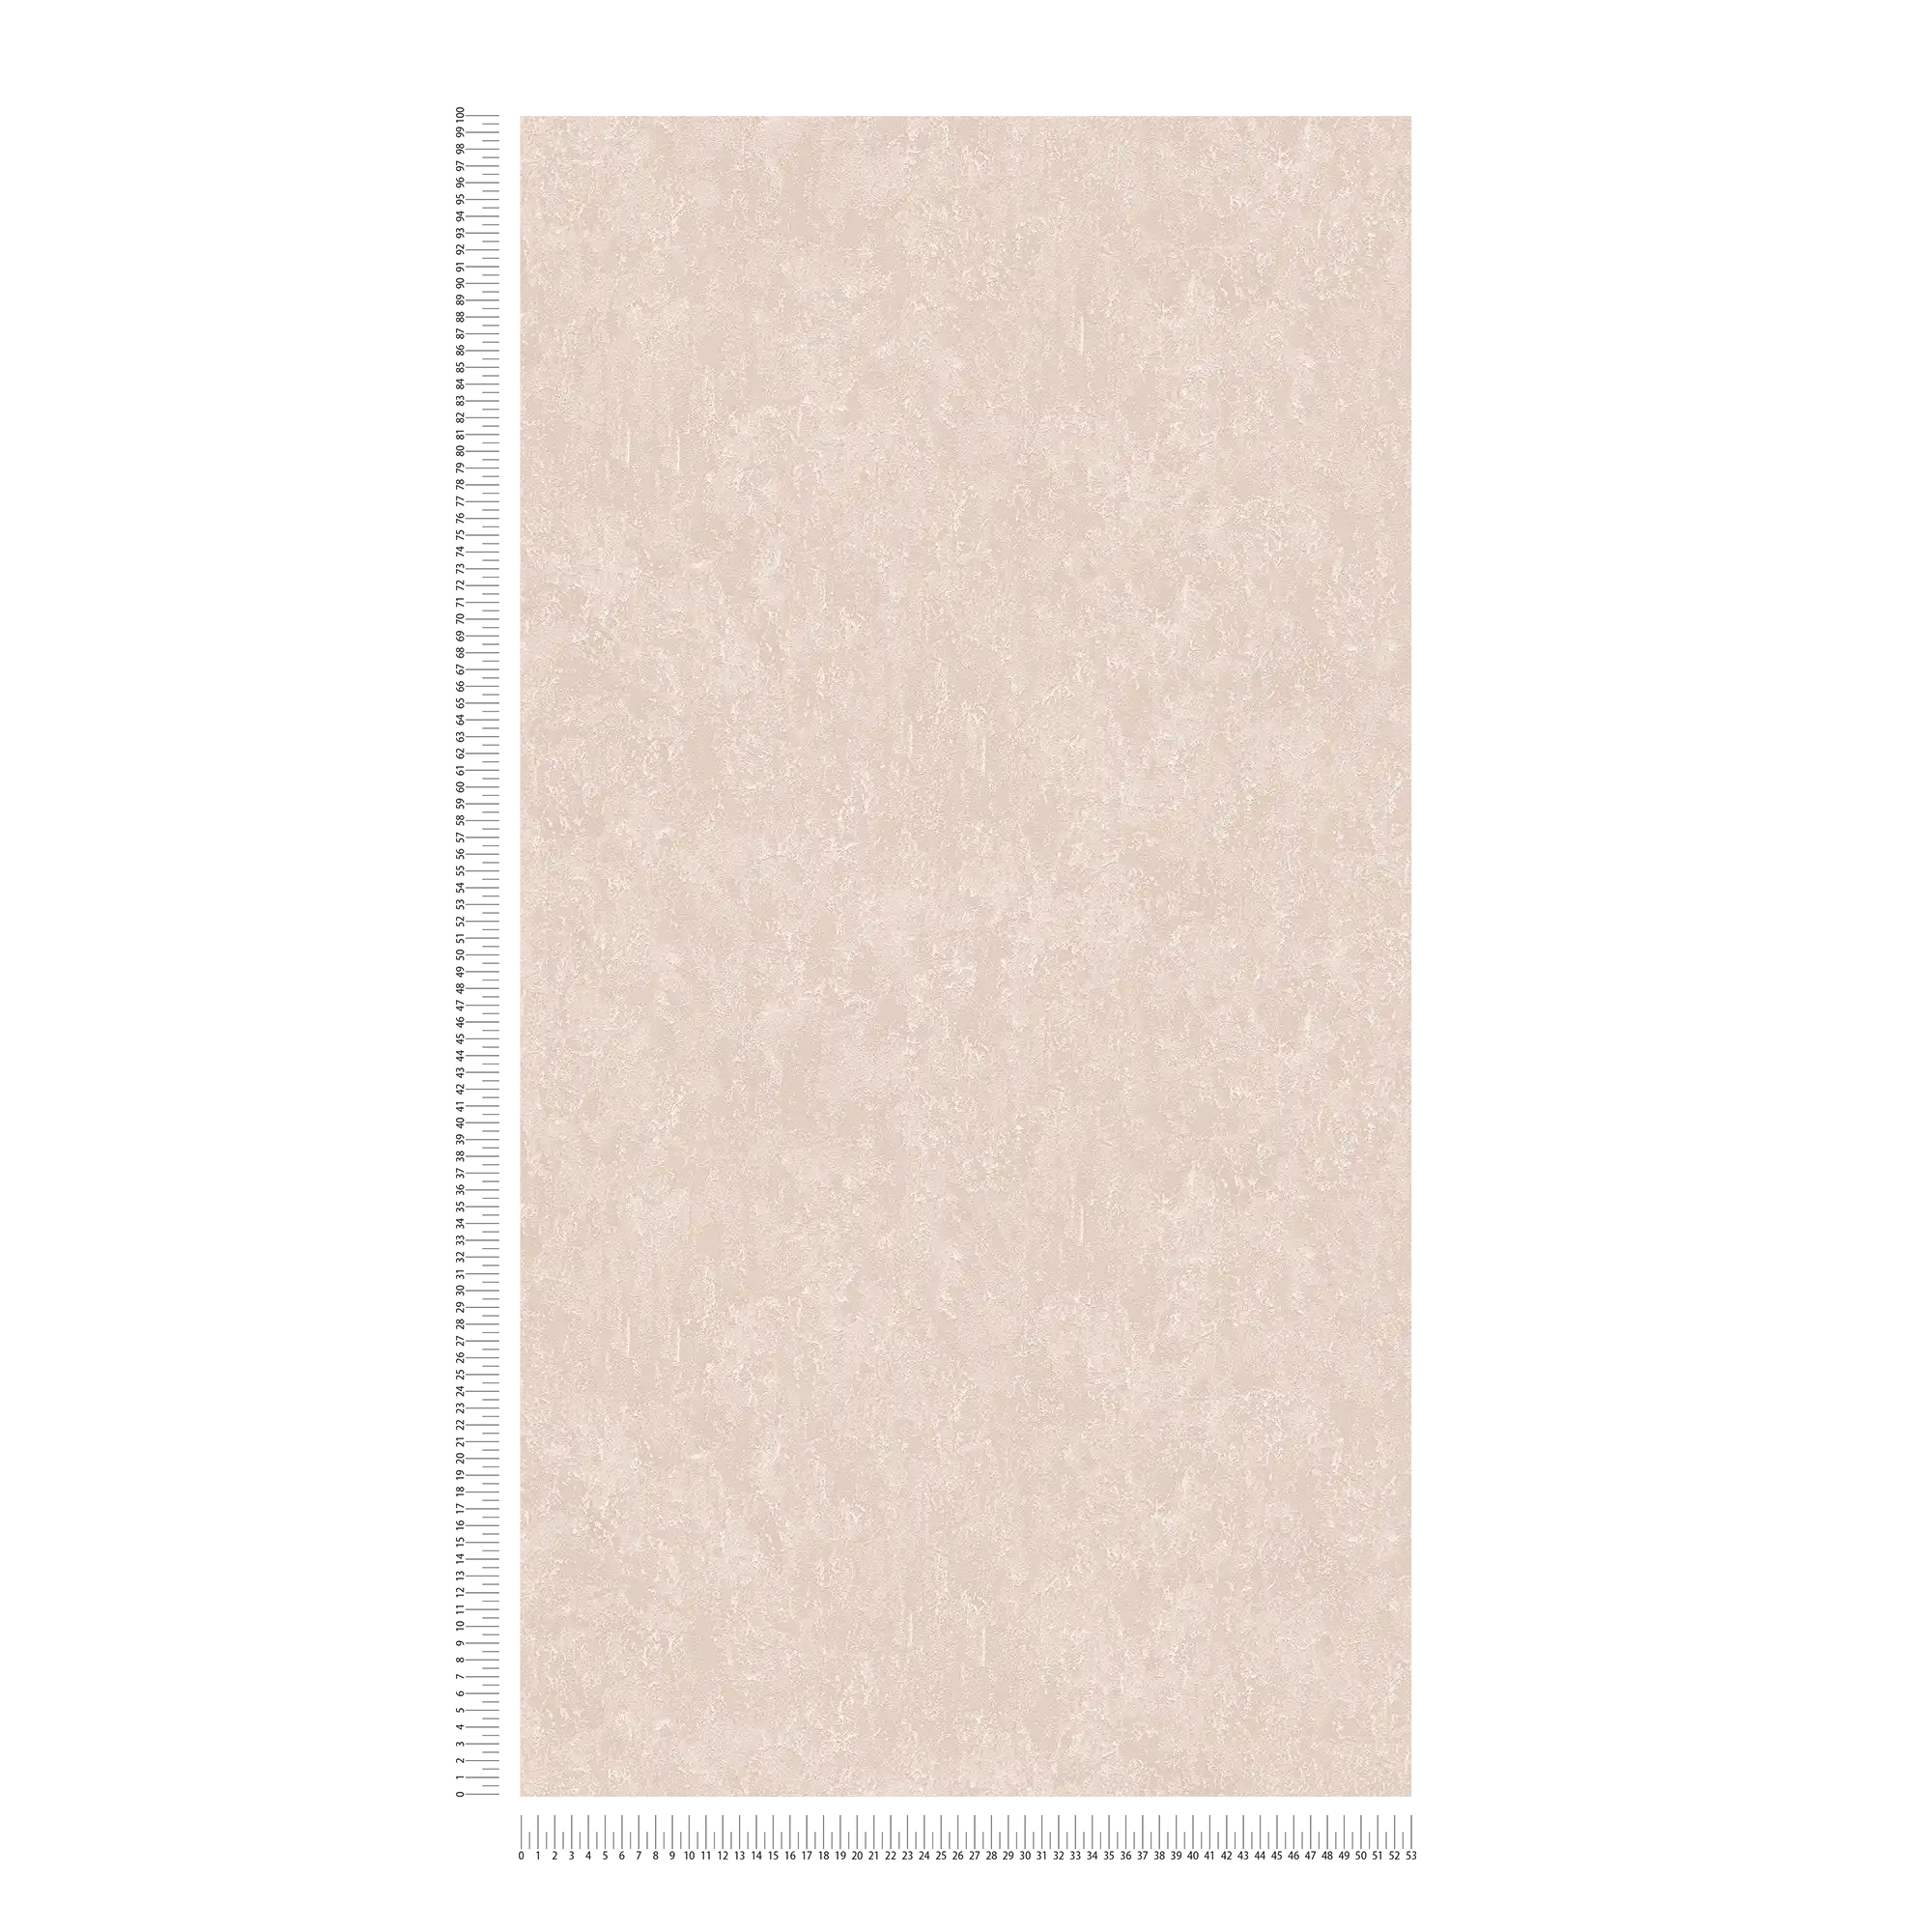             Carta da parati metallizzata marrone chiaro lucida con struttura in rilievo
        